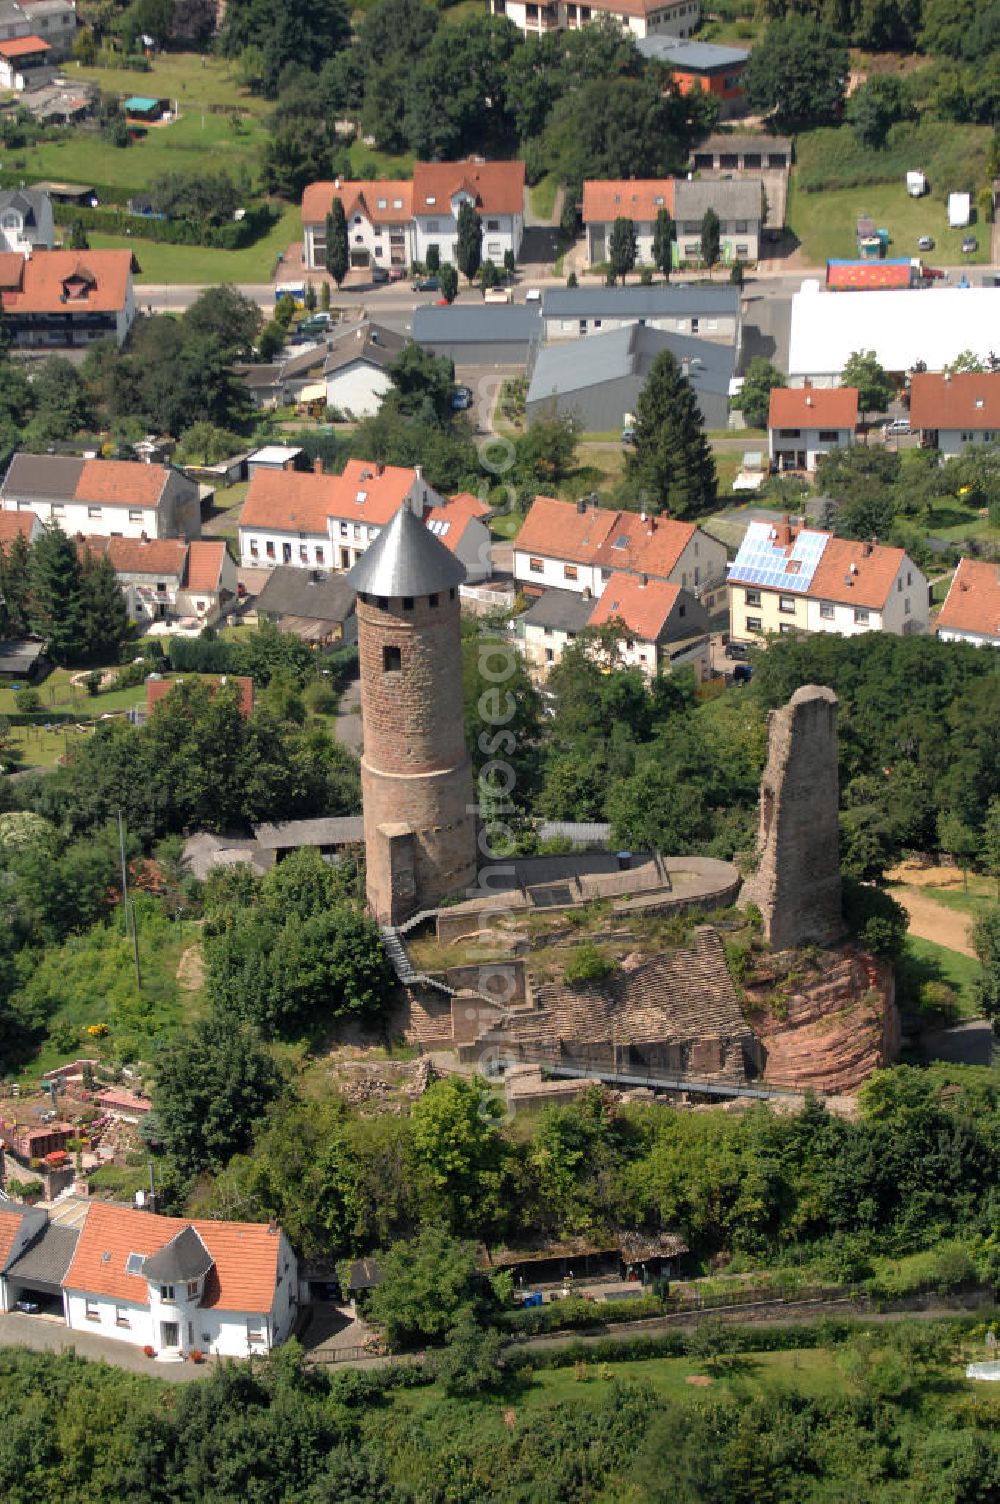 Aerial photograph Kirkel - Blick auf die Burgruine Kirkel. Sie liegt in 307 m Höhe auf einem Bundsandsteinfelsen. Erbaut wurde sie im 11. Jahrhundert, die beiden Türme stammen aus dem 13. Jahrhundert. Im 16. Jahrhundert wurde die Burg zum Wohnschloss für Herzog Johann I. umgebaut. Die Burg wurde mehrmals zerstört und ab 1740 als Steinbruch genutz. Der Rundturm wurde 1955 wieder aufgebaut und diehnt nun als Aussichtsturm. Seit 1994 wird das Gelände als archäologische Forschungstätte genutzt, außerdem gibt es ein Museum und verschiedene Werkstätten. Im Sommer findet der Kirkeler Burgsommer in der Ruine statt. Kontakt: Förderkreis Kirkeler Burg e.V., Eckgasse 3, 66459 Kirkel